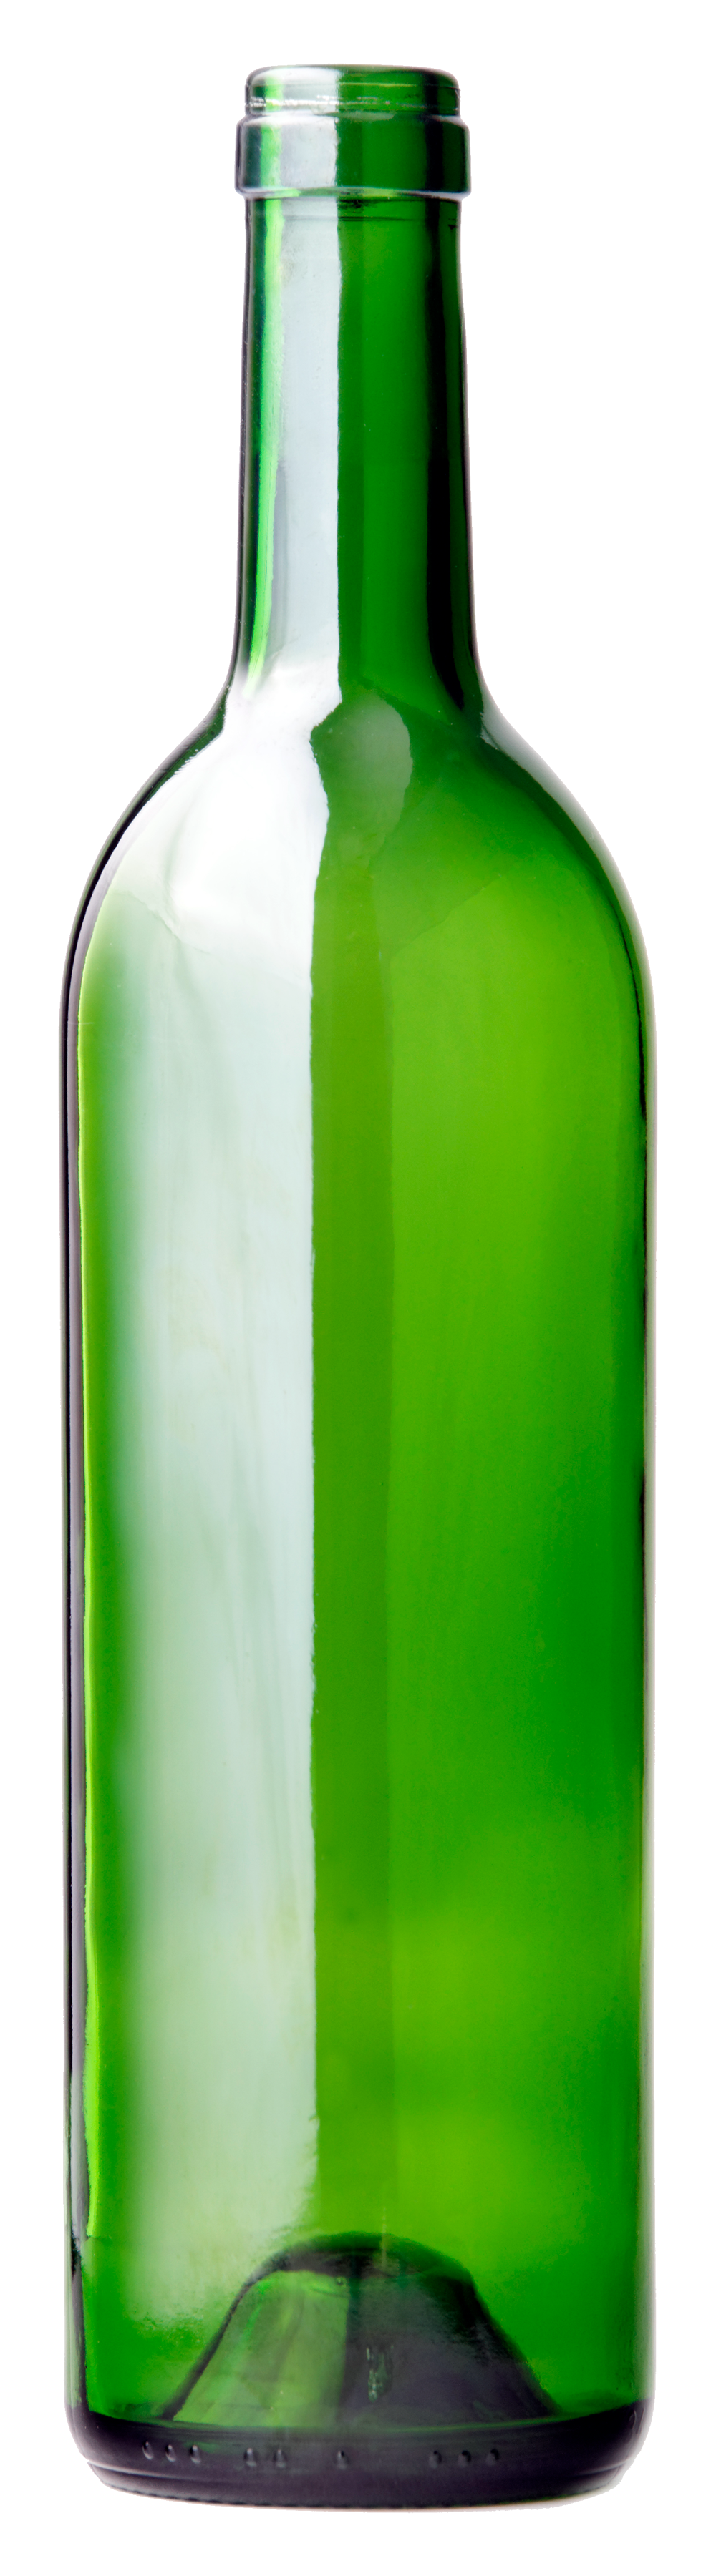 Botol anggur kaca hijau